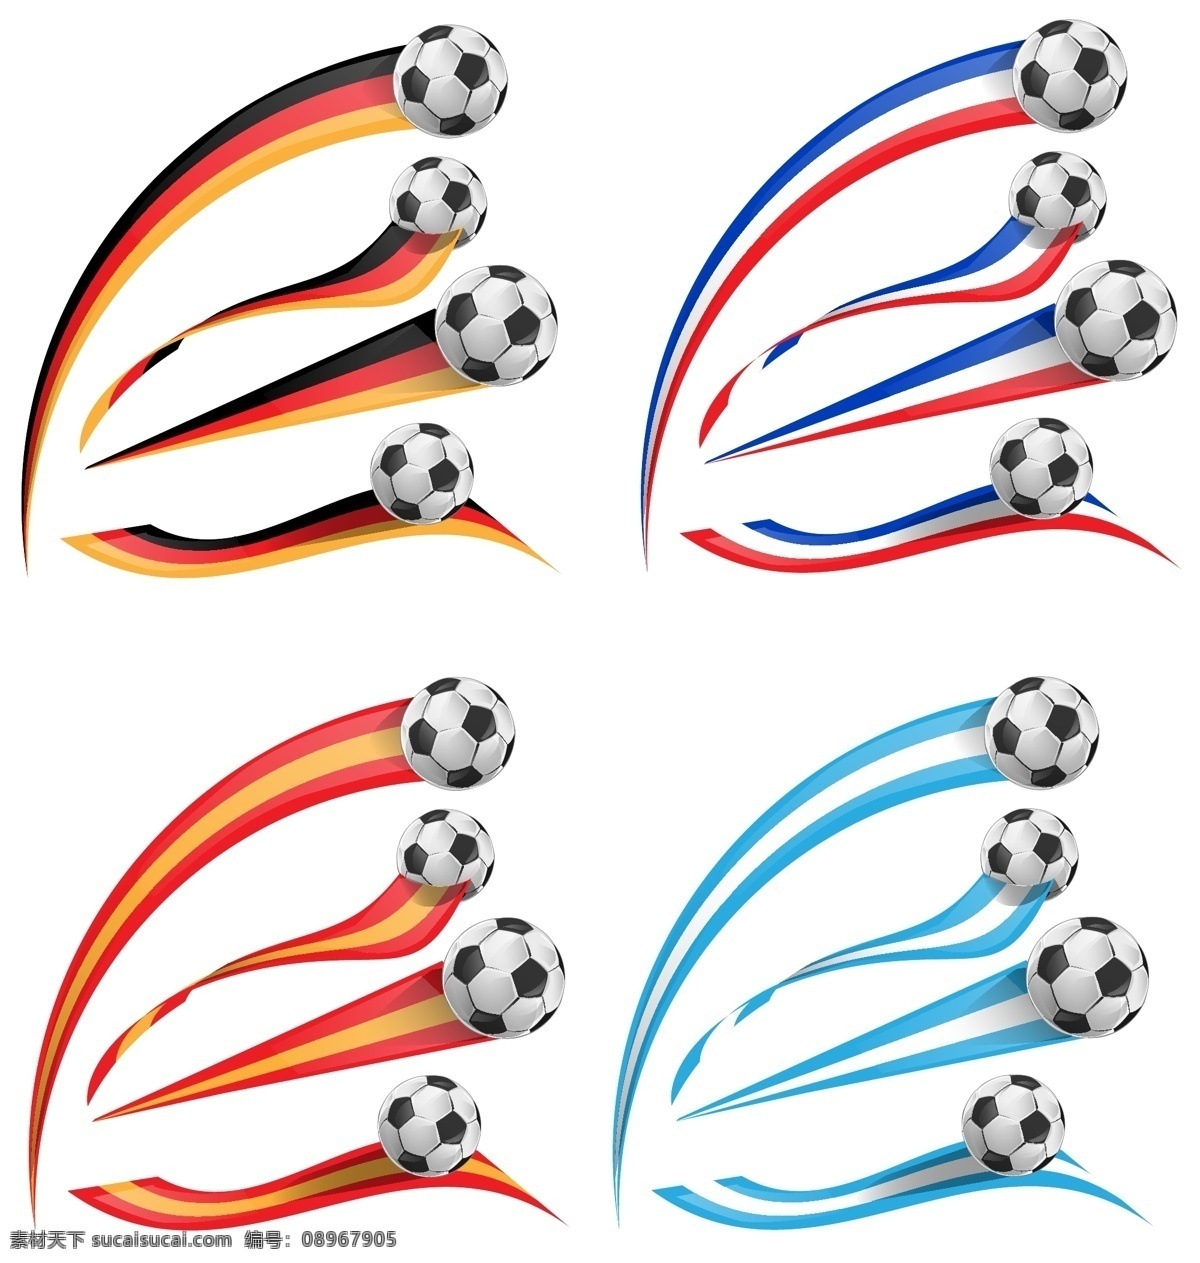 2014 巴西 世界杯 卡通足球 足球比赛 足球背景 巴西世界杯 足球素材 足球运动 奥运会 手绘 矢量 体育运动 文化艺术